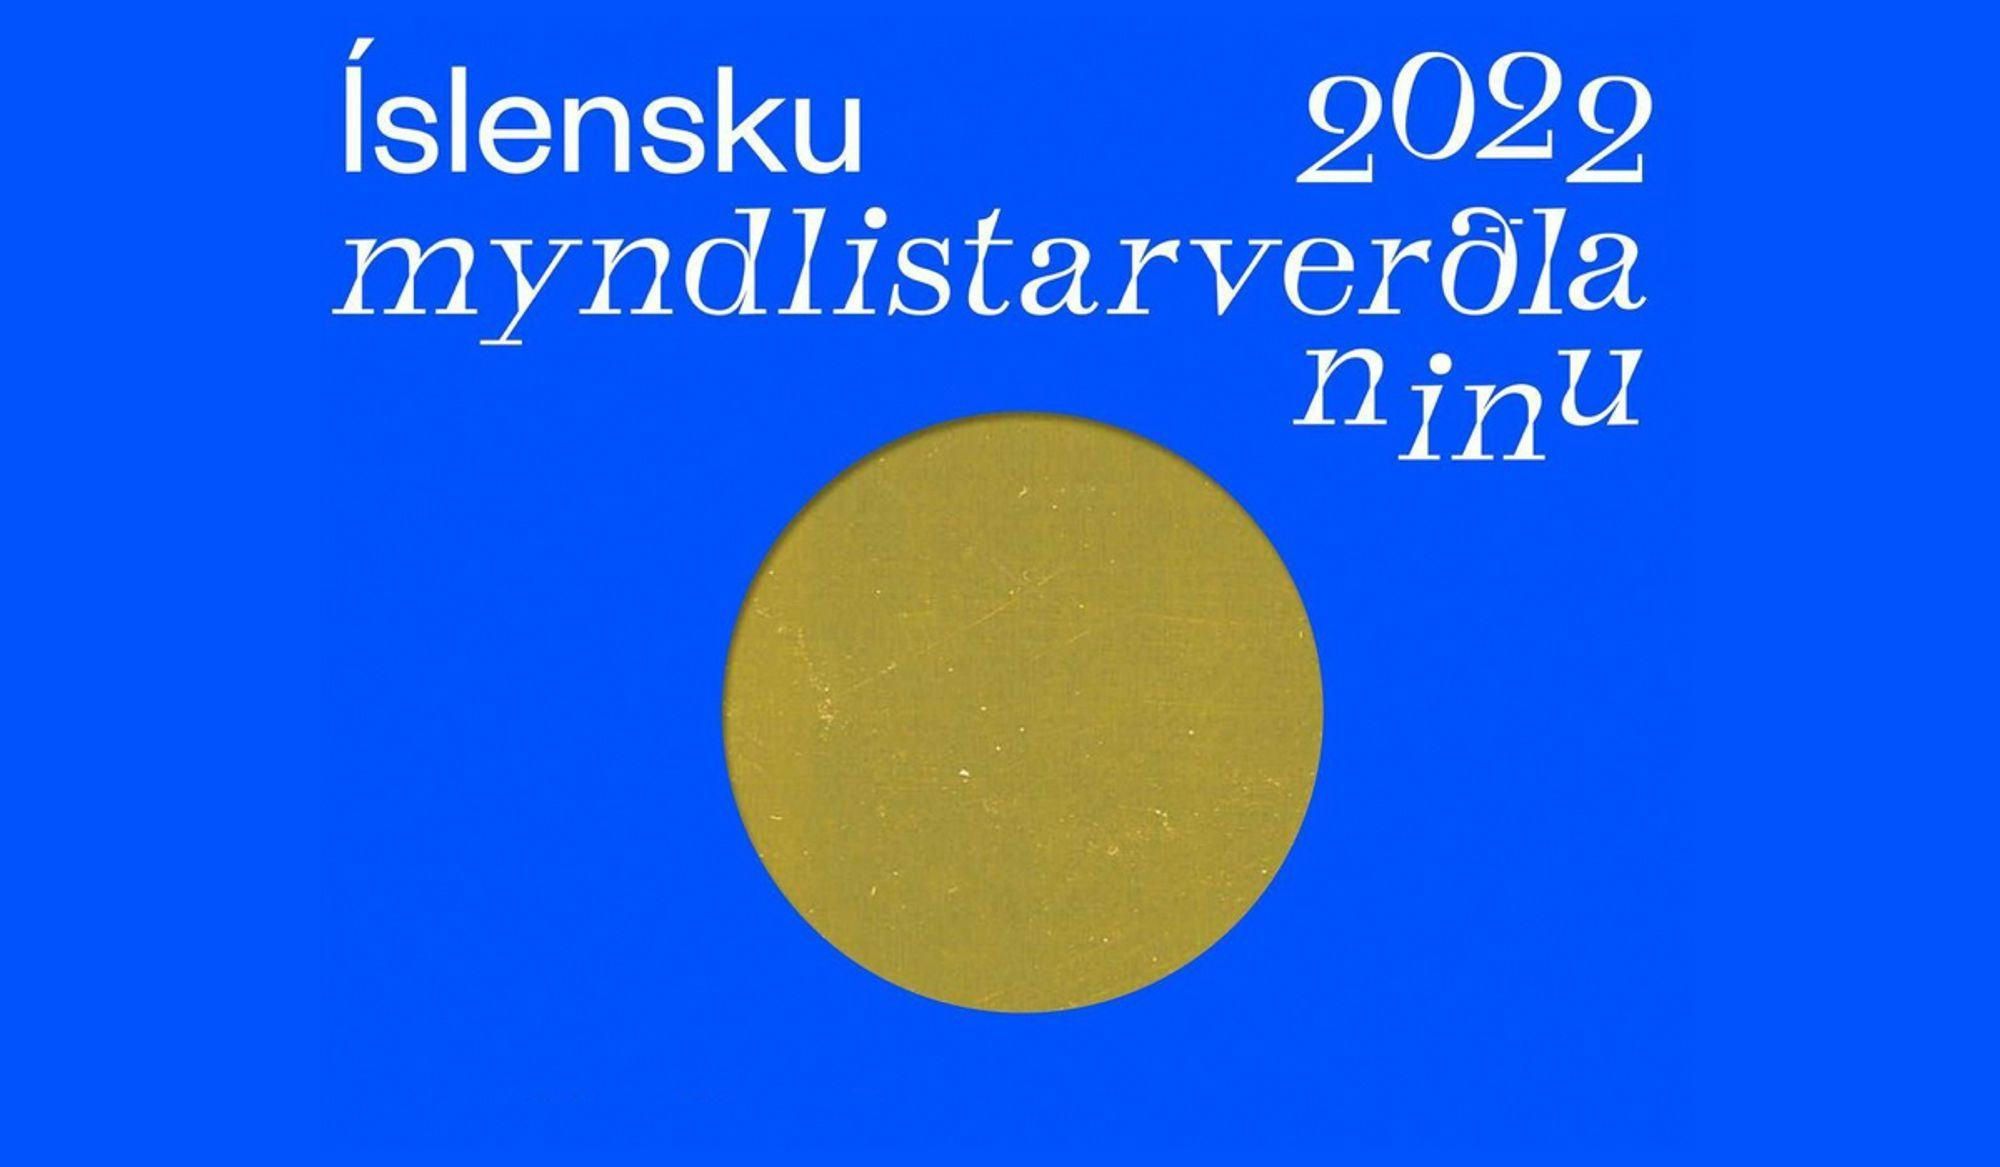 Myndlistarverðlaun logo 2022